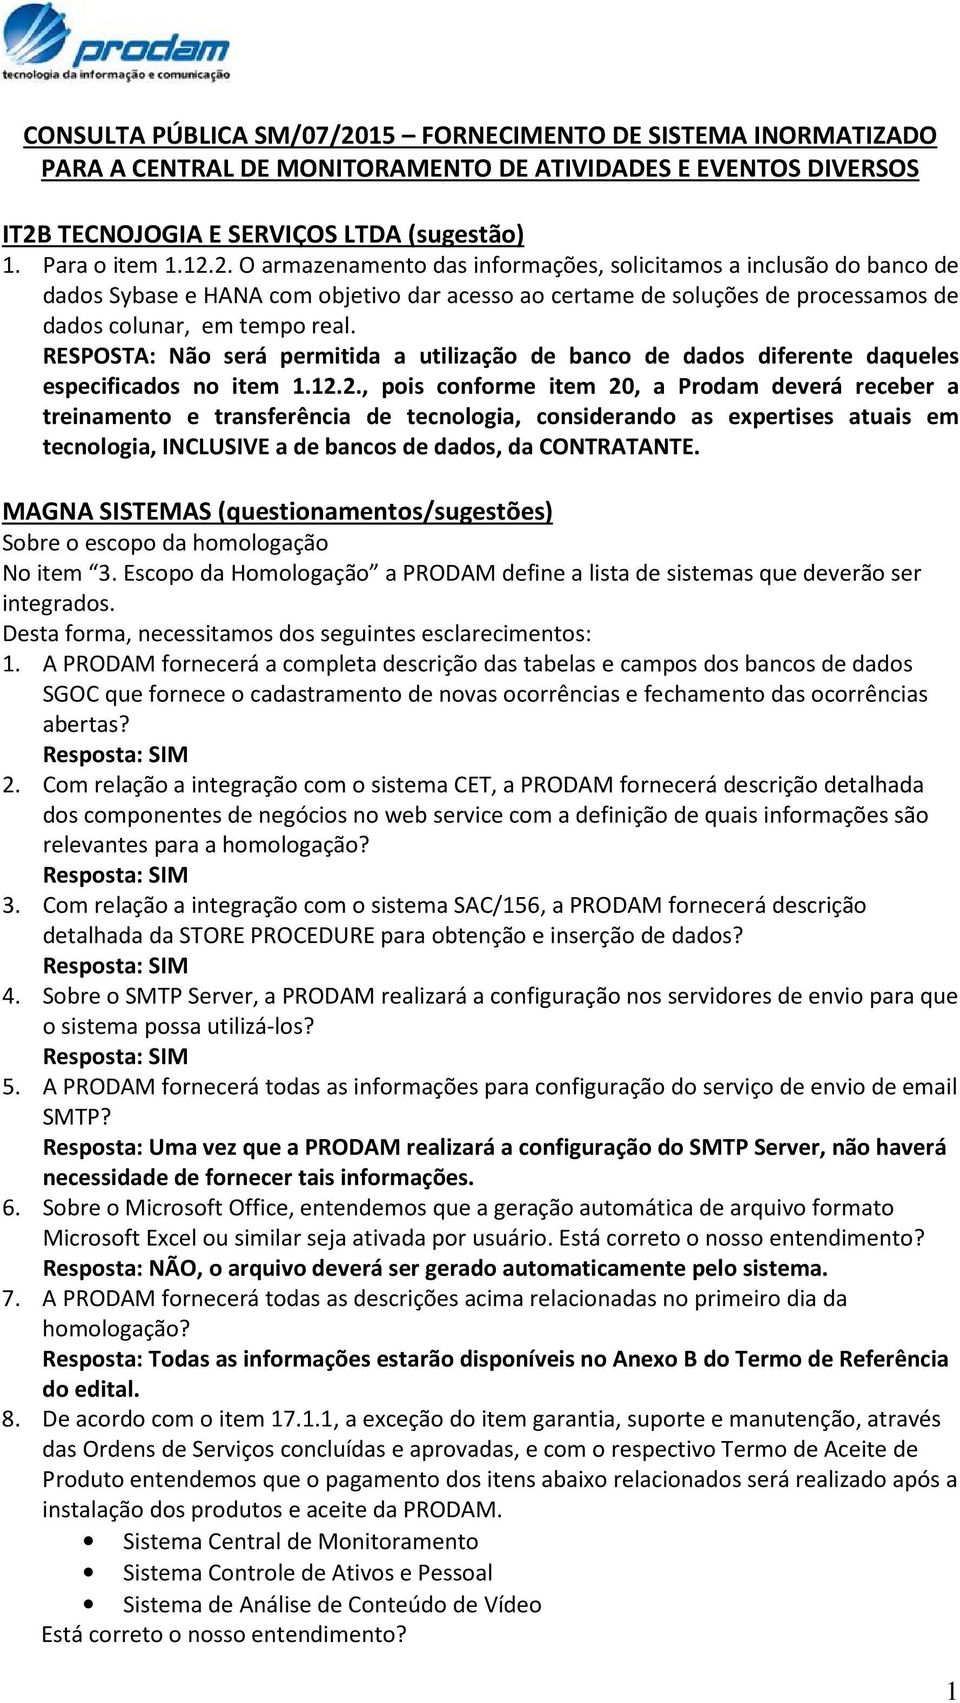 TECNOJOGIA E SERVIÇOS LTDA (sugestão) 1. Para o item 1.12.